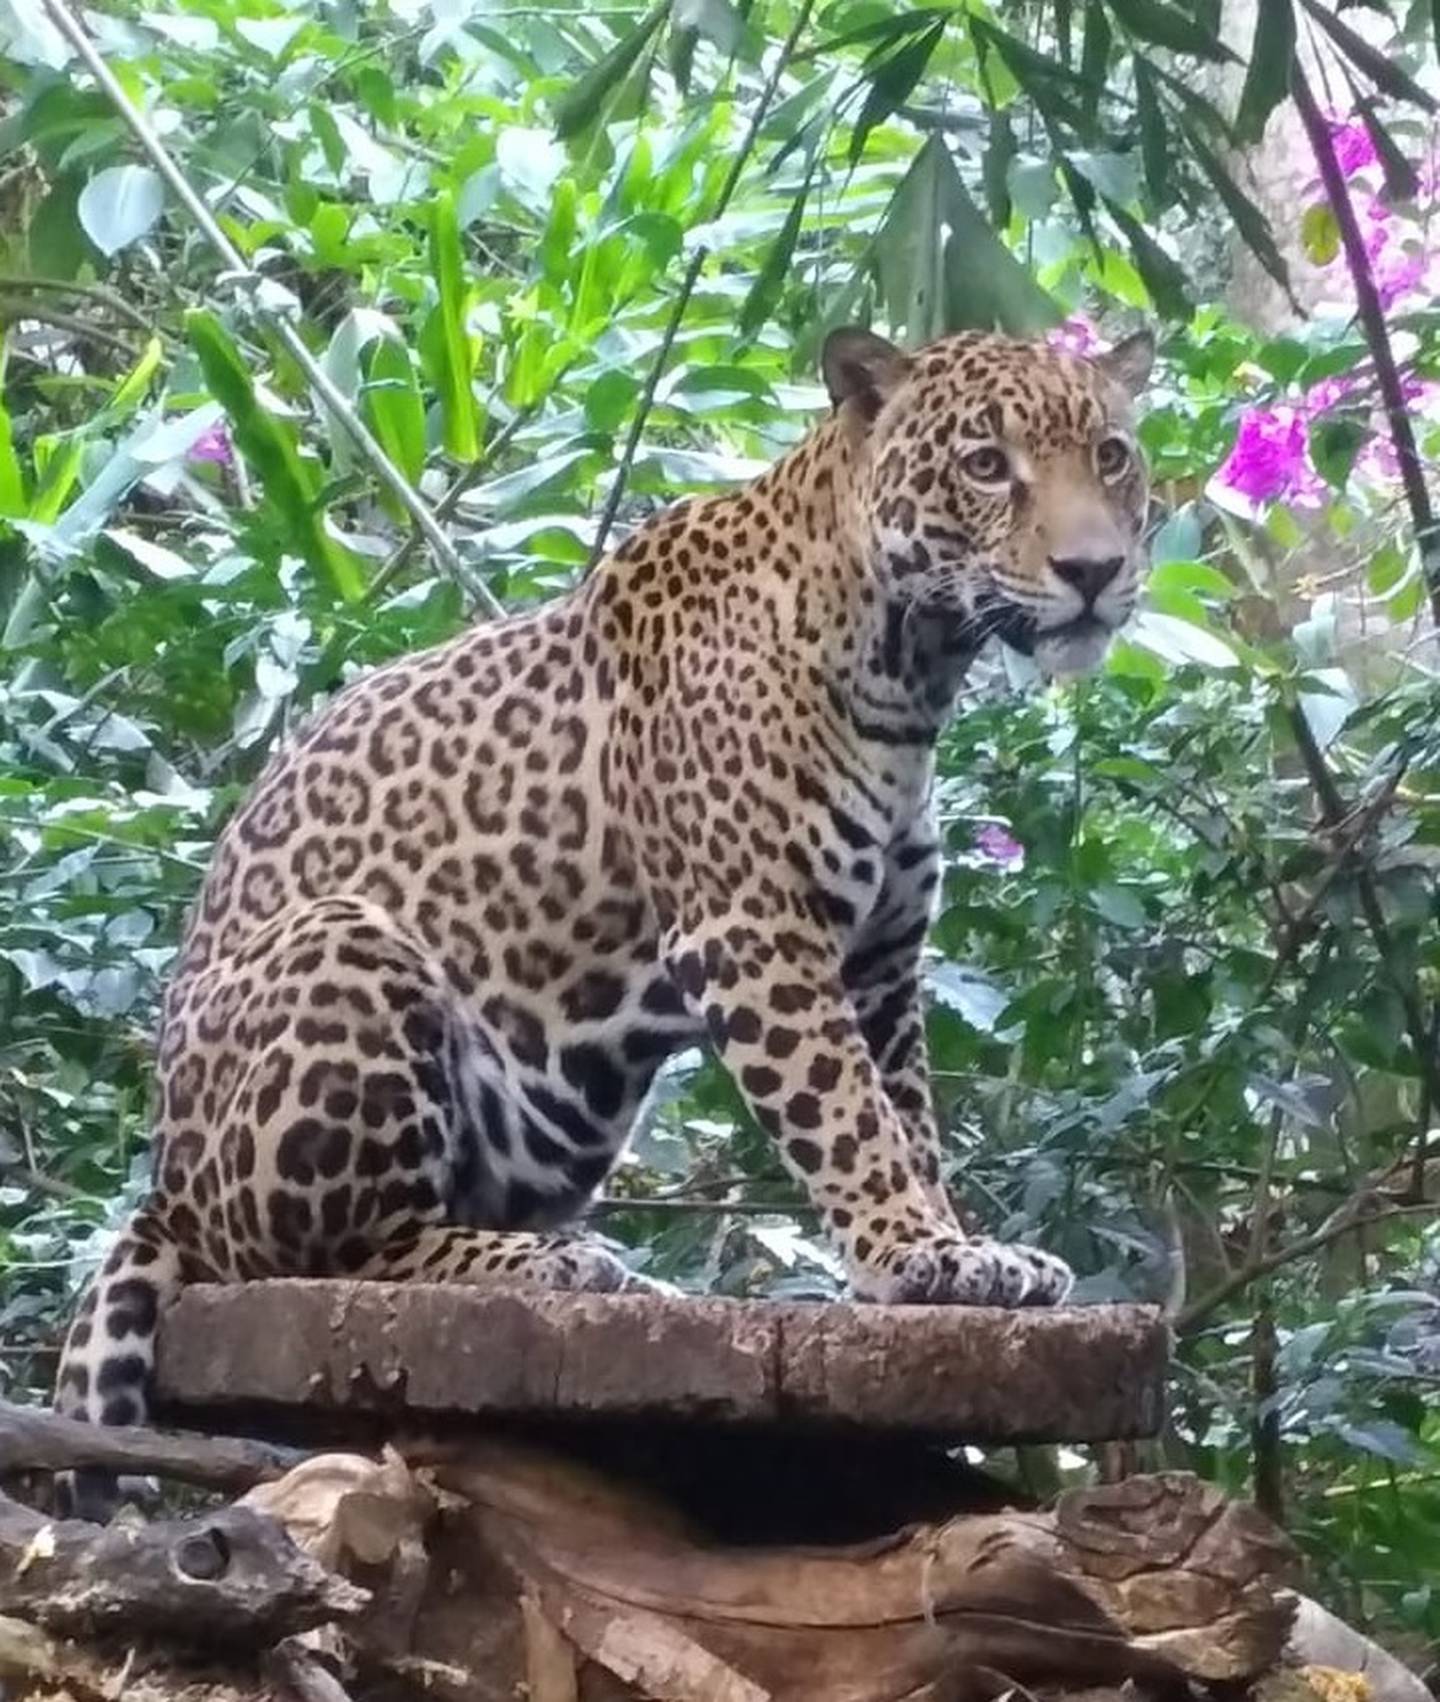 Guapo, el jaguar de Rescate Animal Zoo Ave. Foto cortesía Ronald Sibaja.